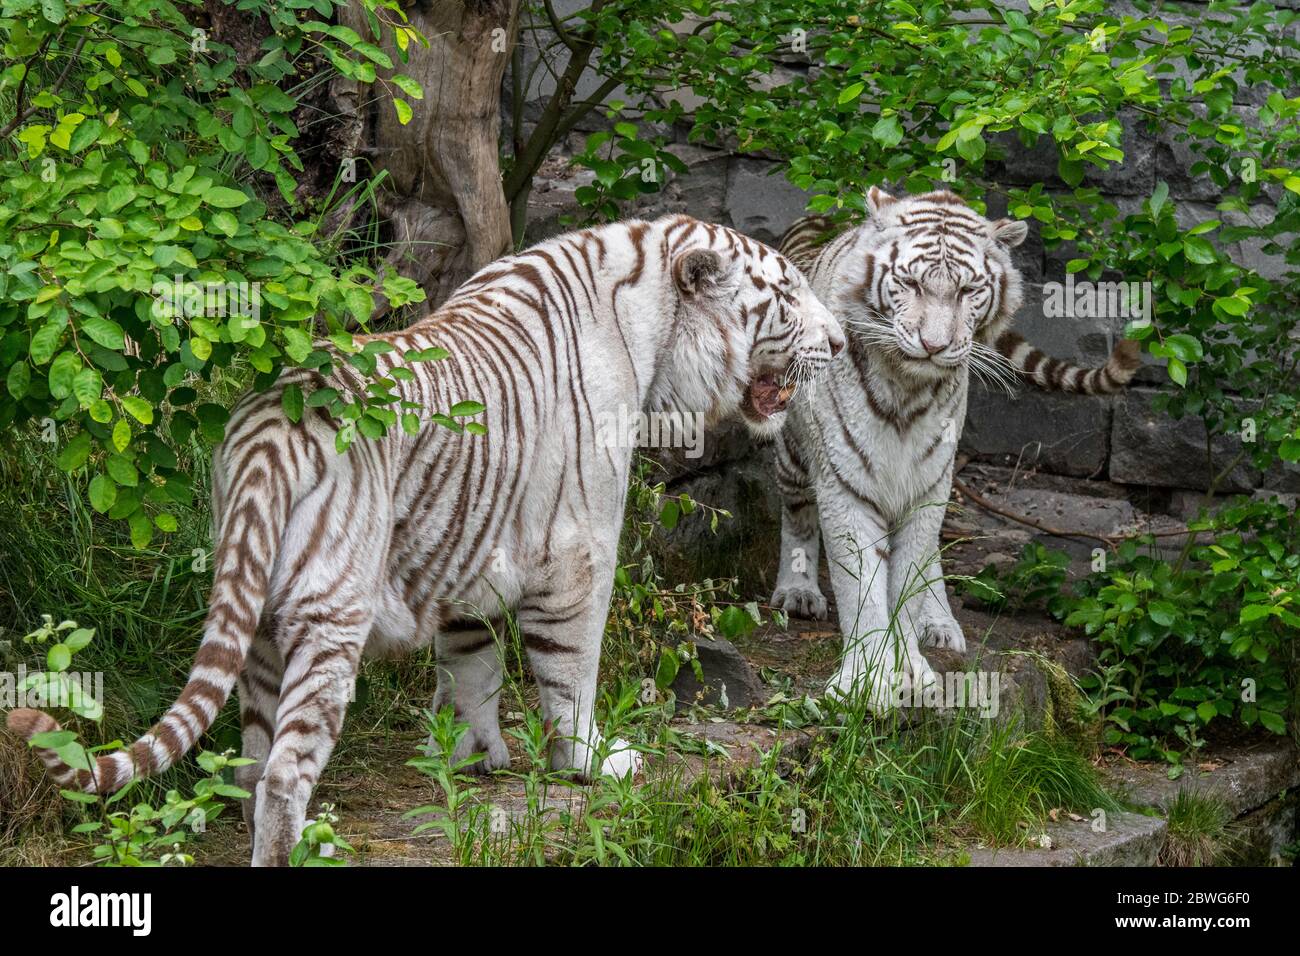 Zwei weiße Tiger / gebleichte Tigerpaar (Panthera tigris) Pigmentvariante des bengalischen Tigers, männliches Begegnungsweibchen, in Indien heimisch Stockfoto